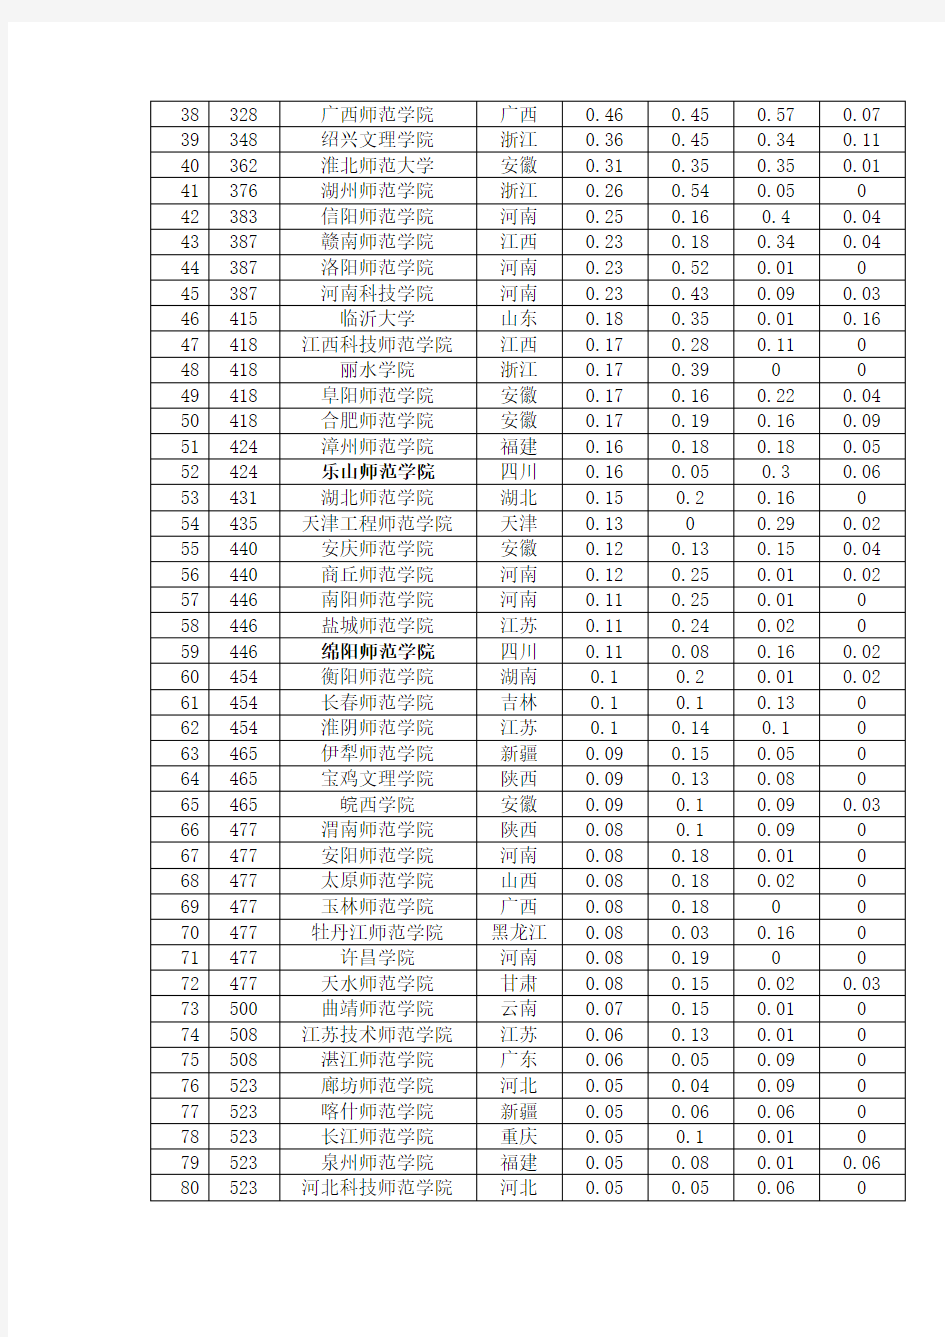 最新2012年中国师范类大学排名